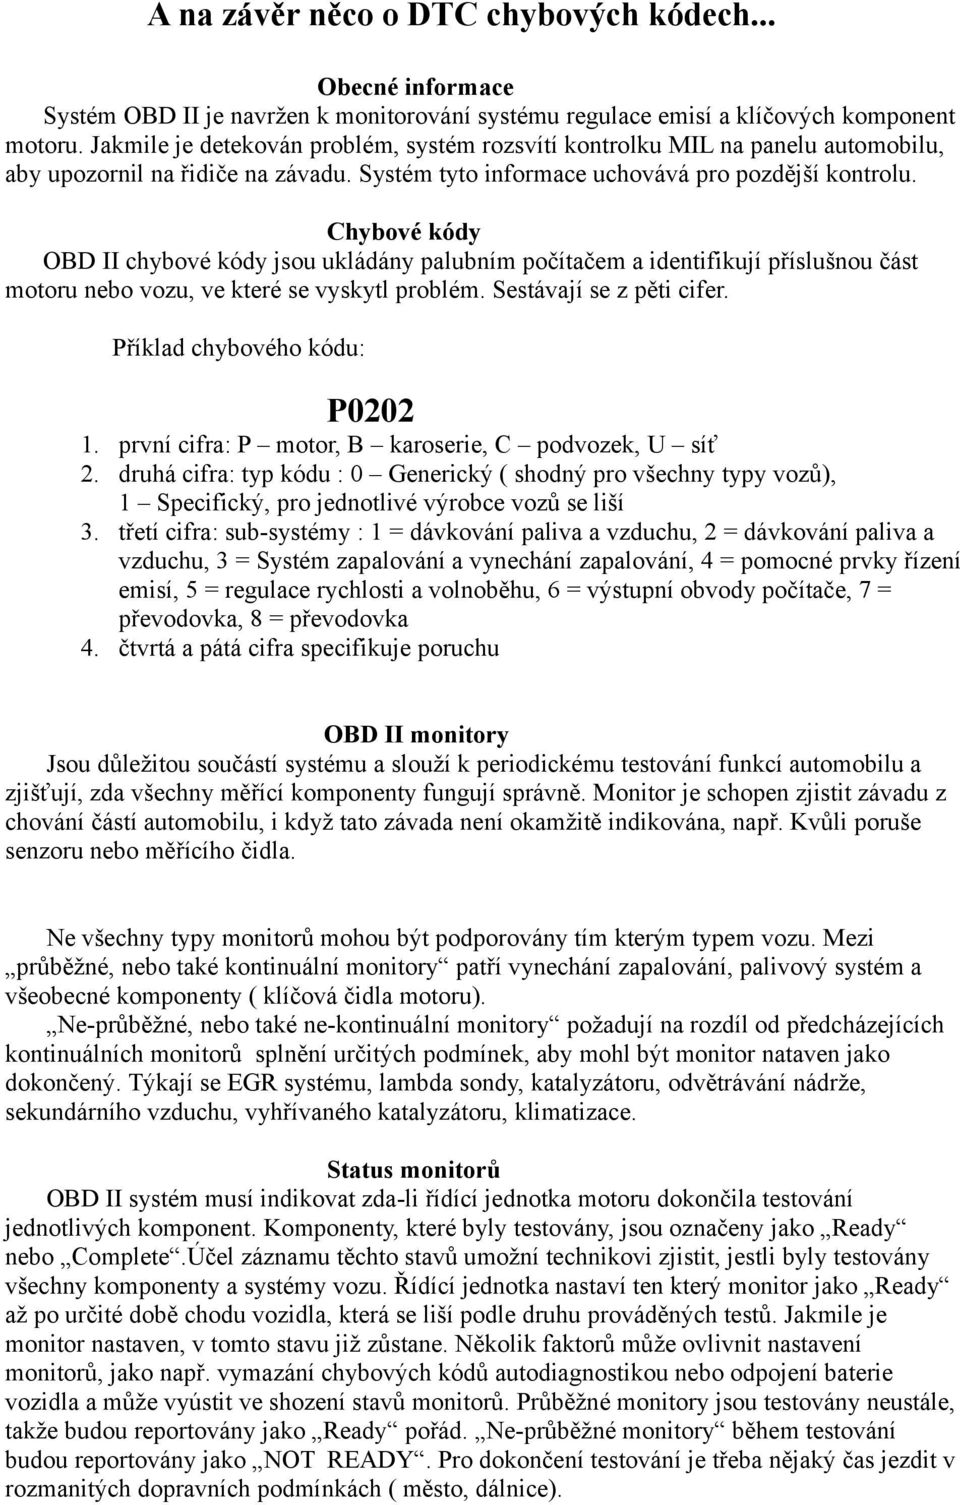 Chybové kódy OBD II chybové kódy jsou ukládány palubním počítačem a identifikují příslušnou část motoru nebo vozu, ve které se vyskytl problém. Sestávají se z pěti cifer.